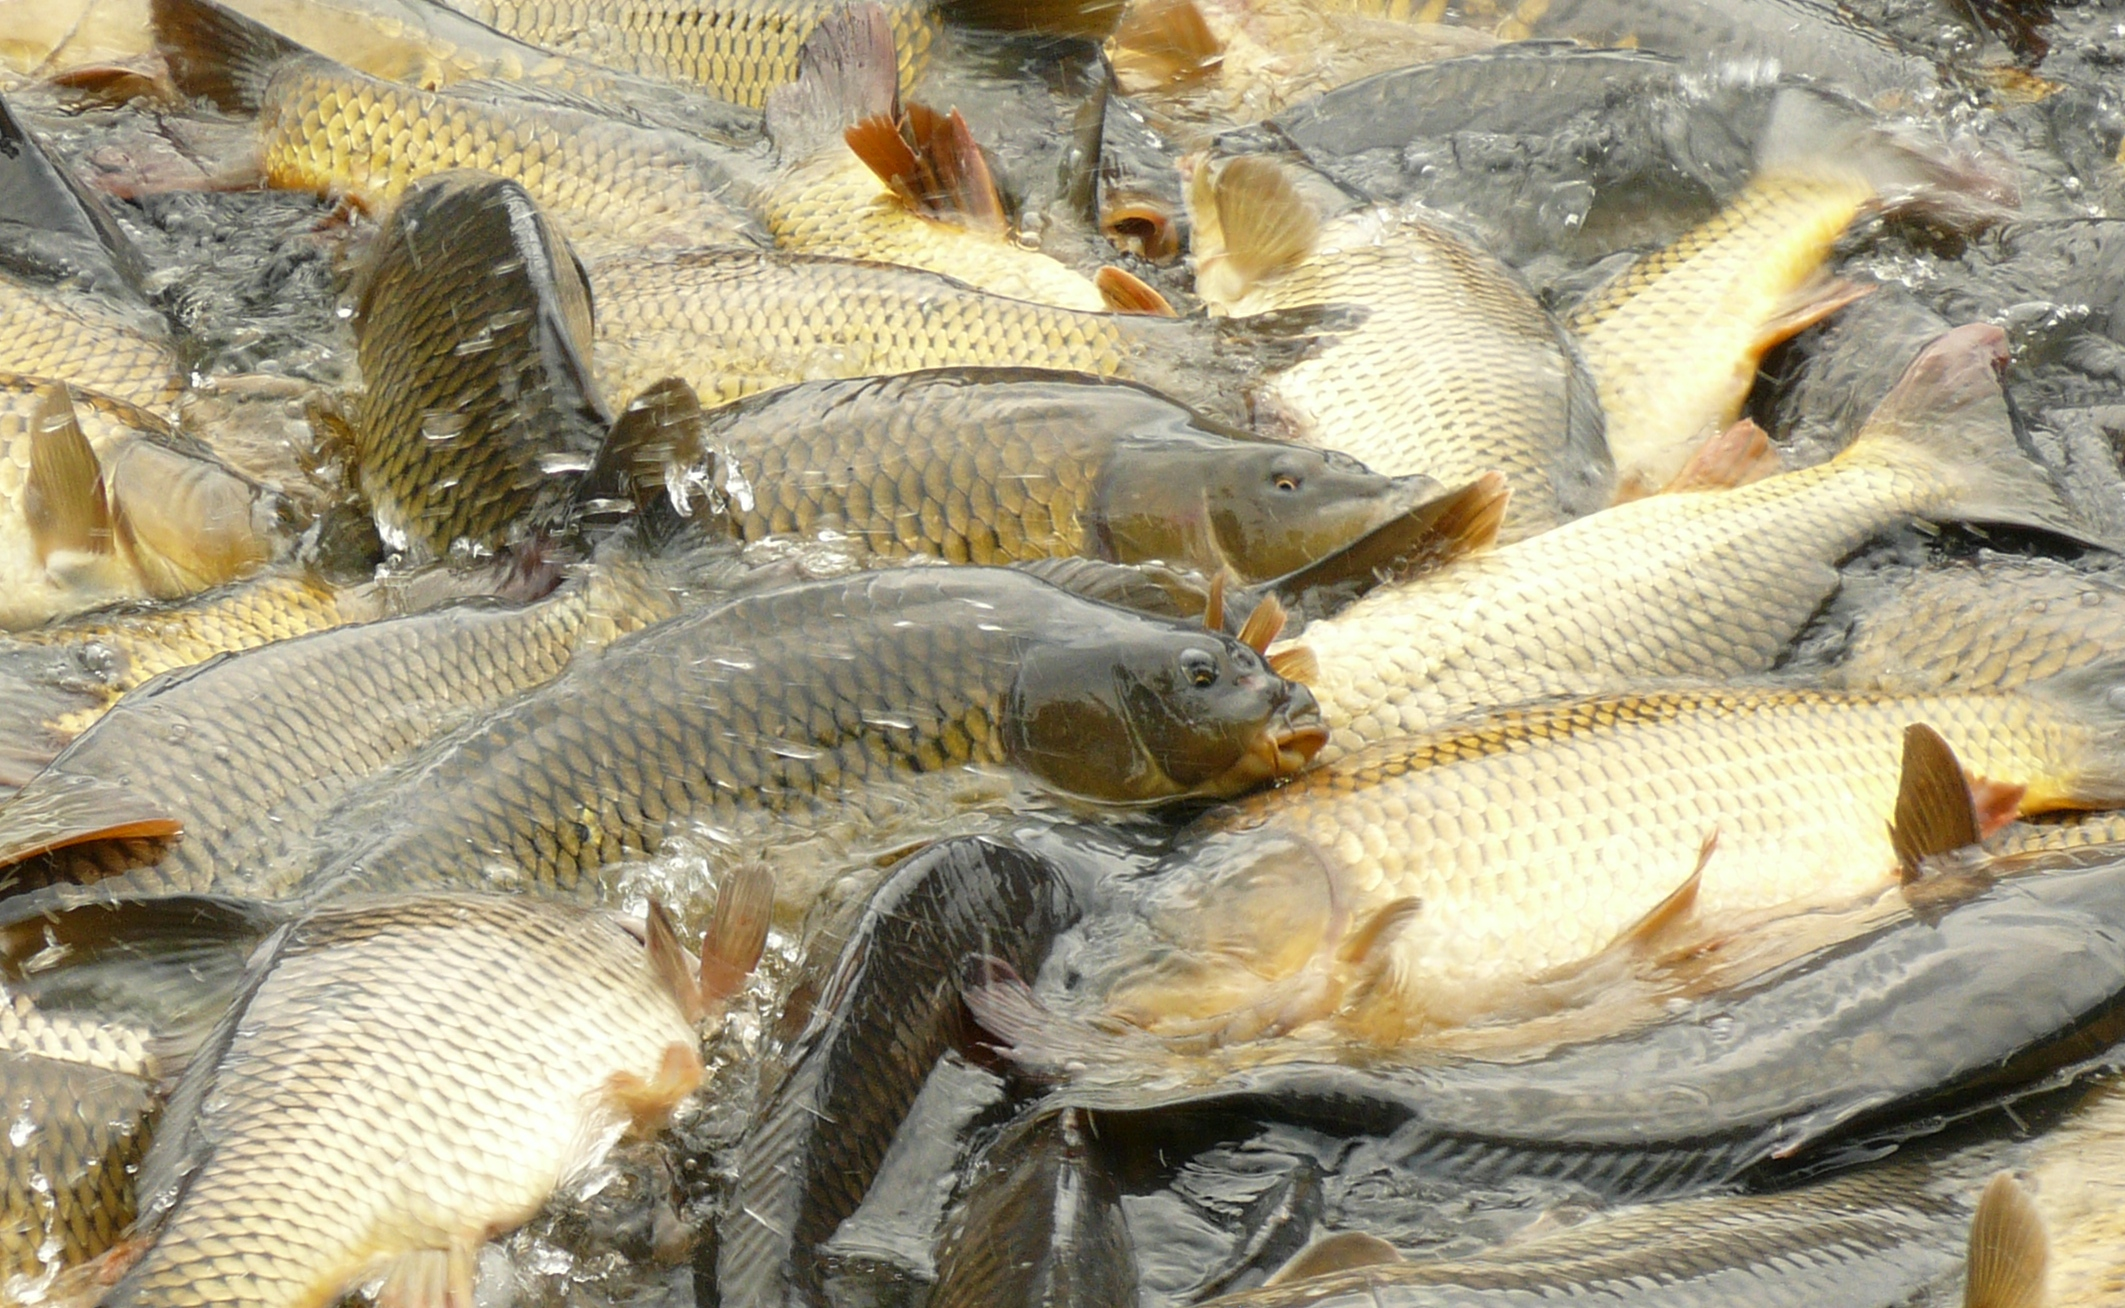 Podzimní  příjem  žádostí  z  OP  Rybářství  2014 –2020 proběhne v říjnu tohoto roku